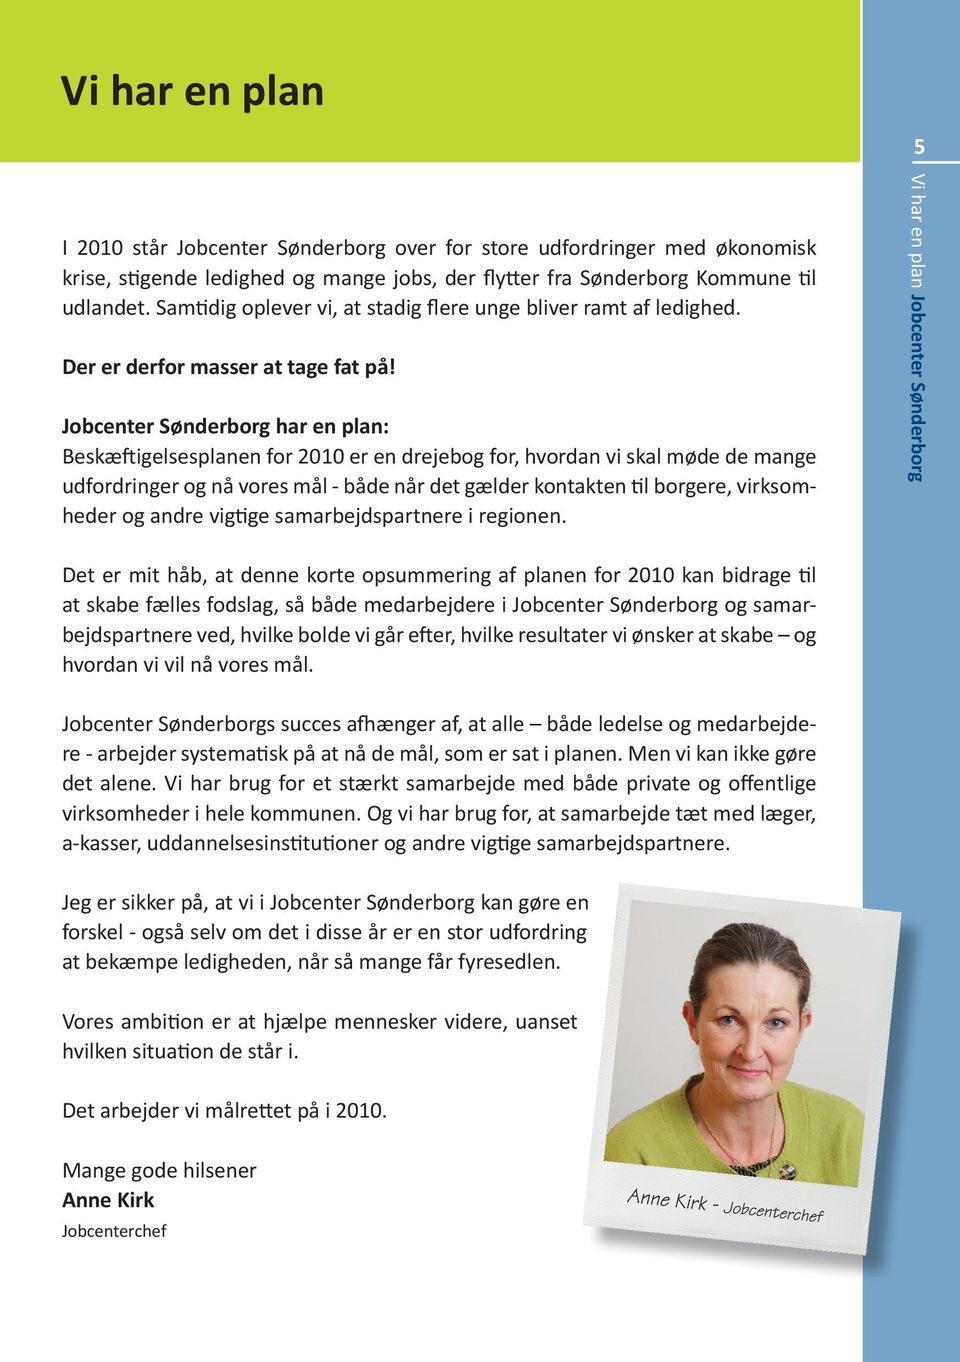 Jobcenter Sønderborg har en plan: Beskæftigelsesplanen for 2010 er en drejebog for, hvordan vi skal møde de mange udfordringer og nå vores mål - både når det gælder kontakten til borgere,